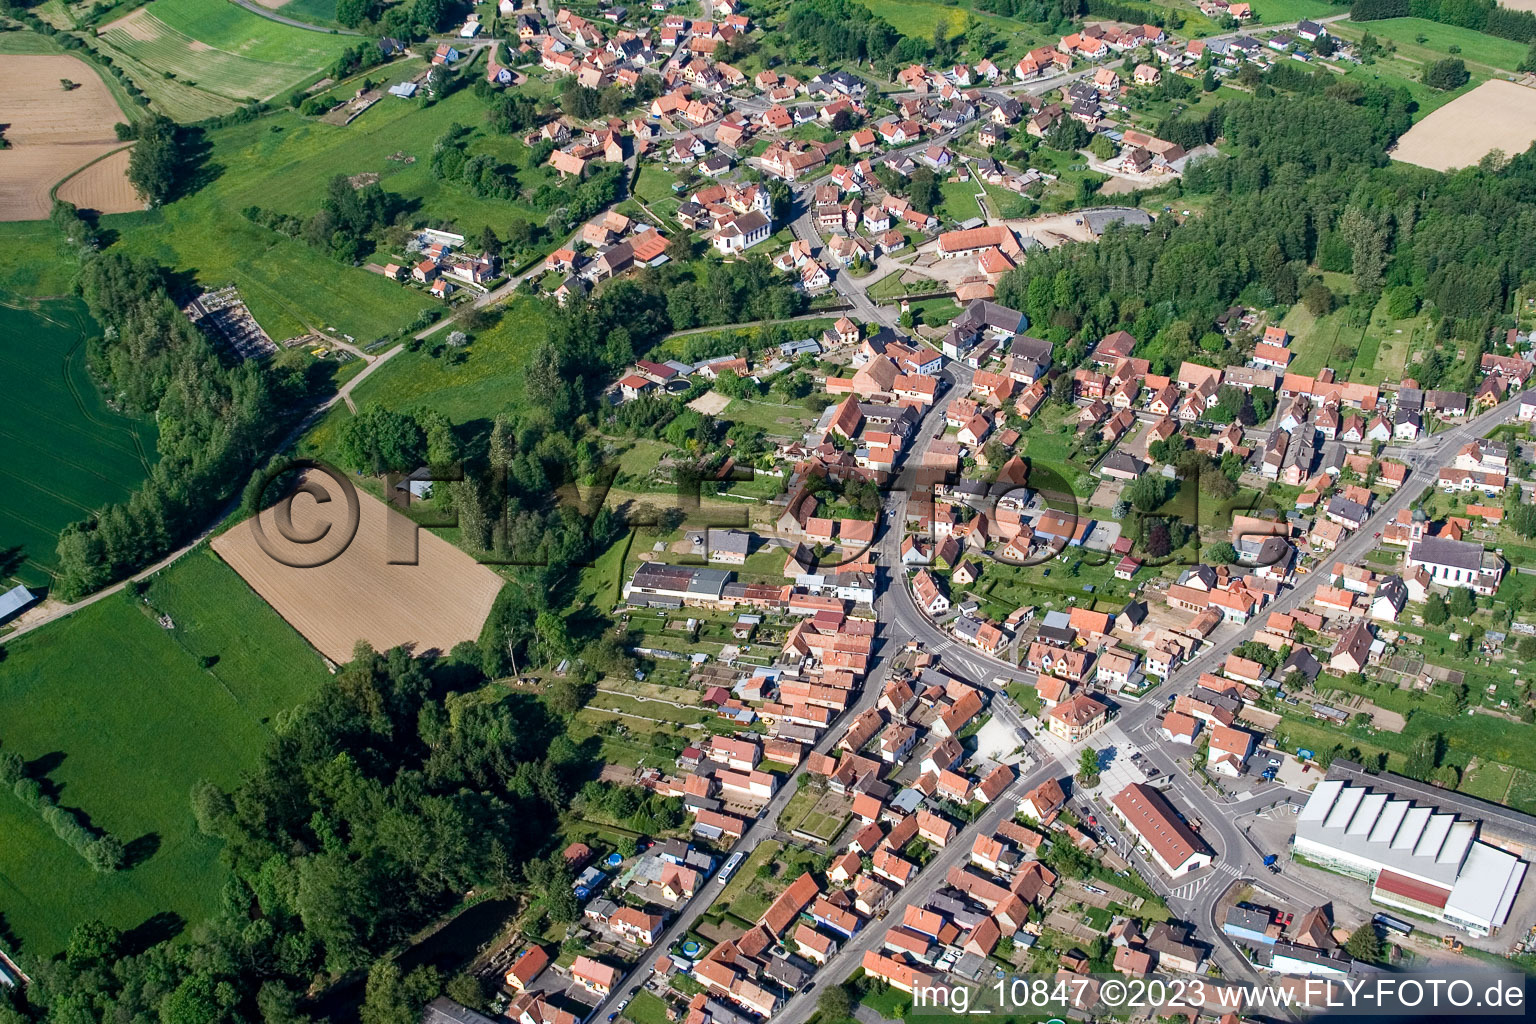 Gumbrechtshoffen im Bundesland Bas-Rhin, Frankreich von der Drohne aus gesehen